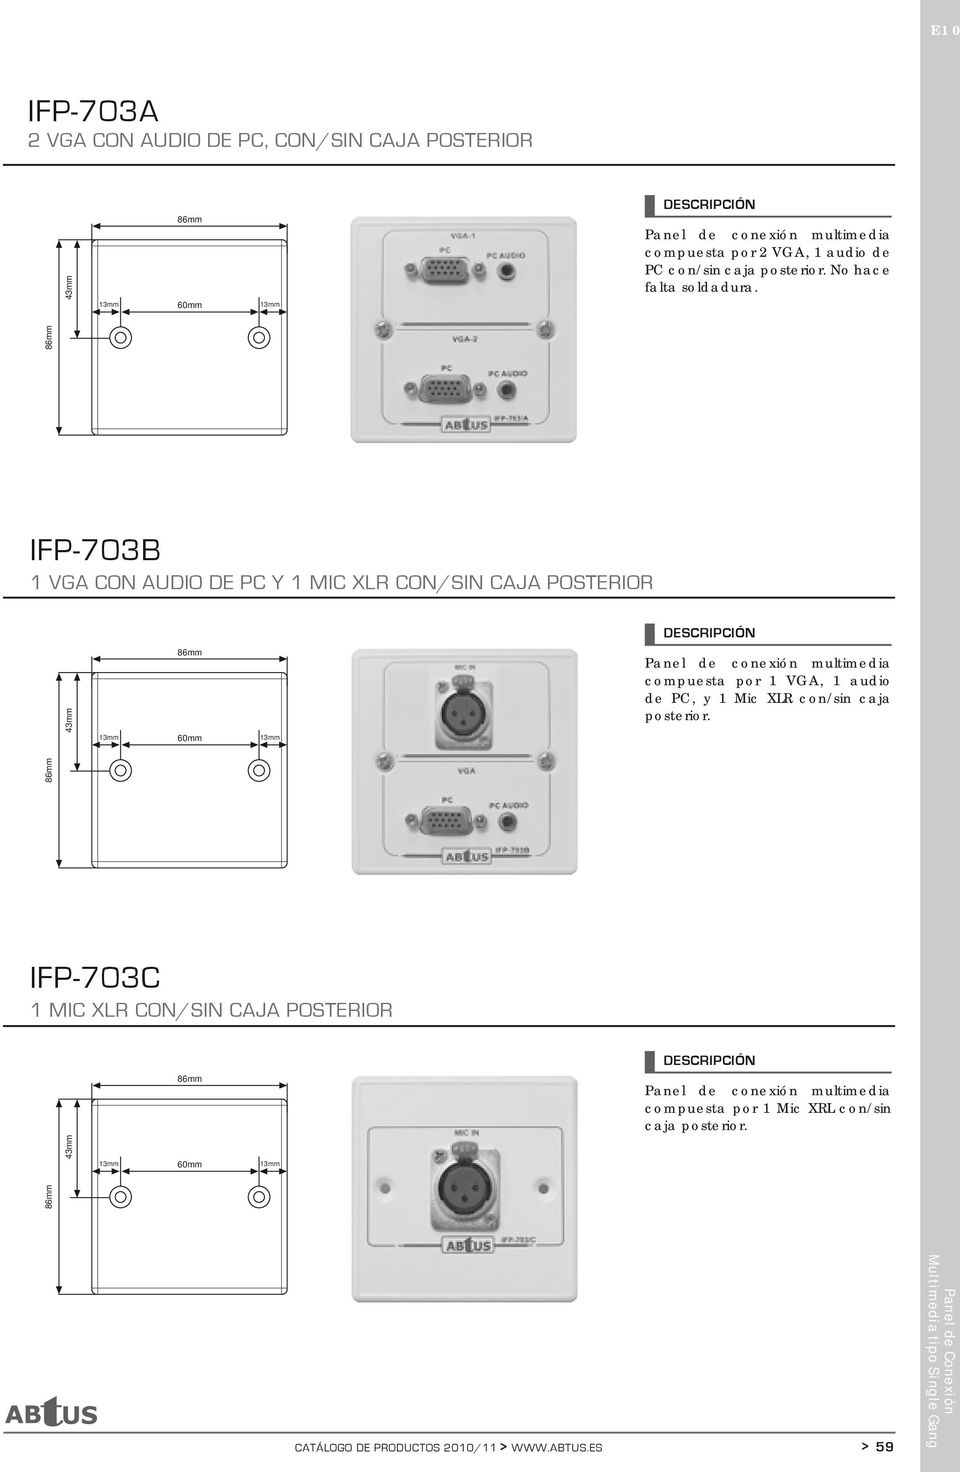 IFP-703B 1 VGA CON AUDIO DE PC Y 1 MIC XLR CON/SIN CAJA POSTERIOR compuesta por 1 VGA, 1 audio de PC, y